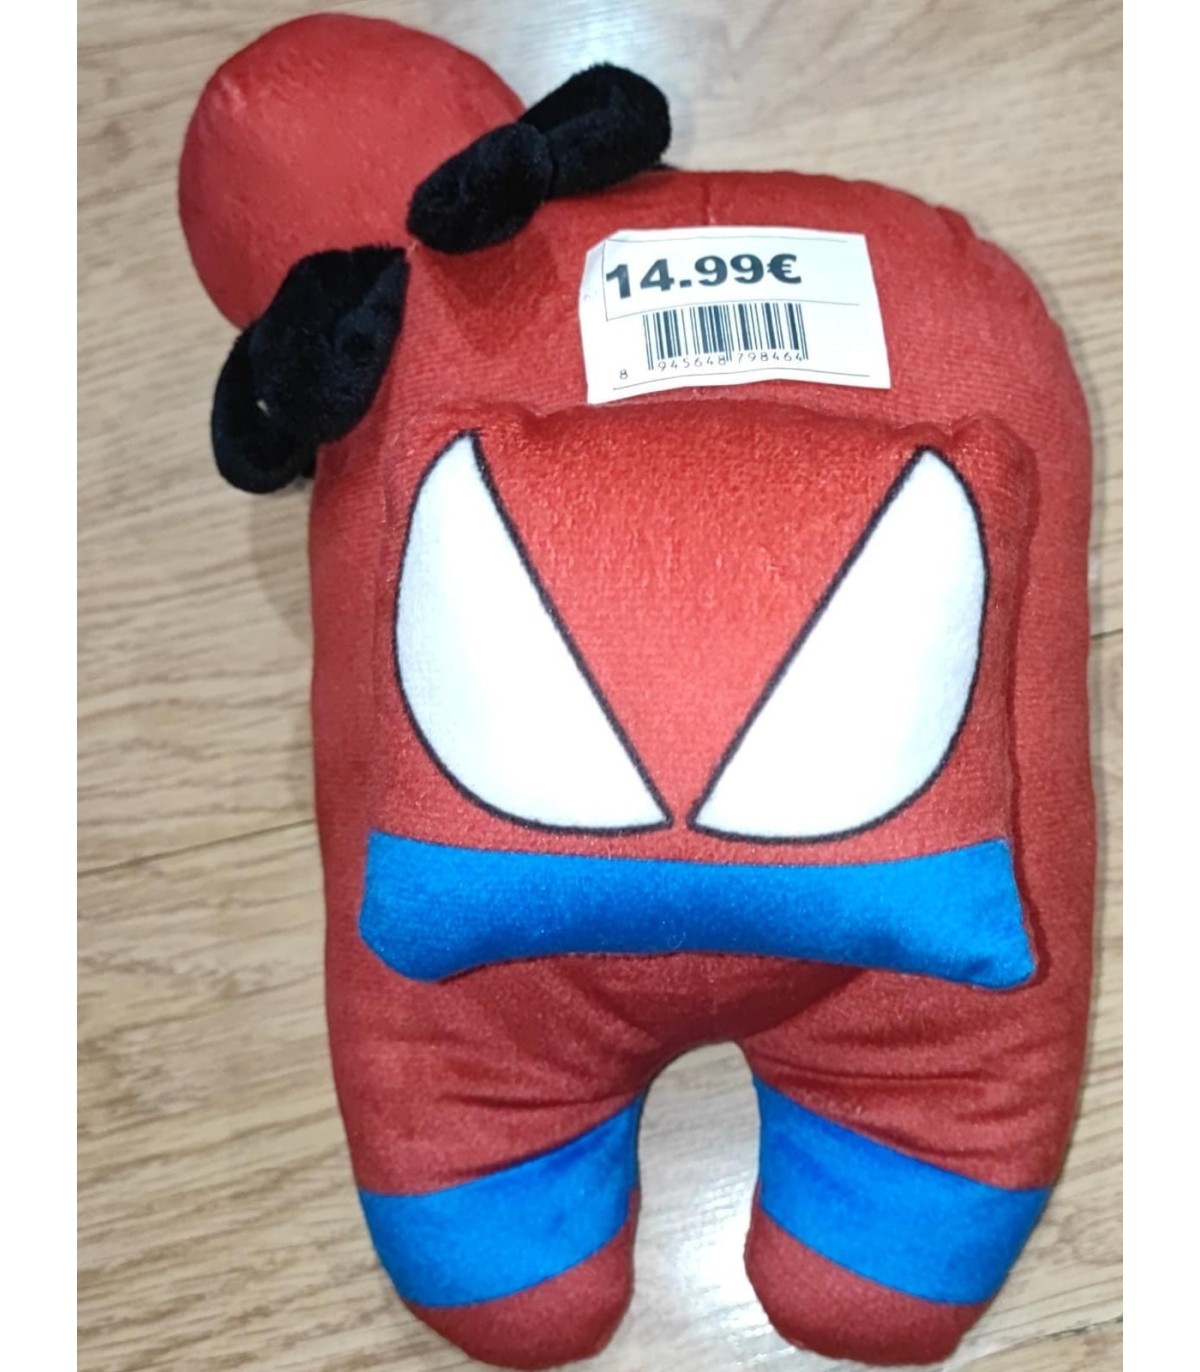 🕷️🧸 ¡Aventúrate con el Peluche Spiderman con Capucha de Alta Calidad!  🕸️🦸‍♂️ 19,99 €